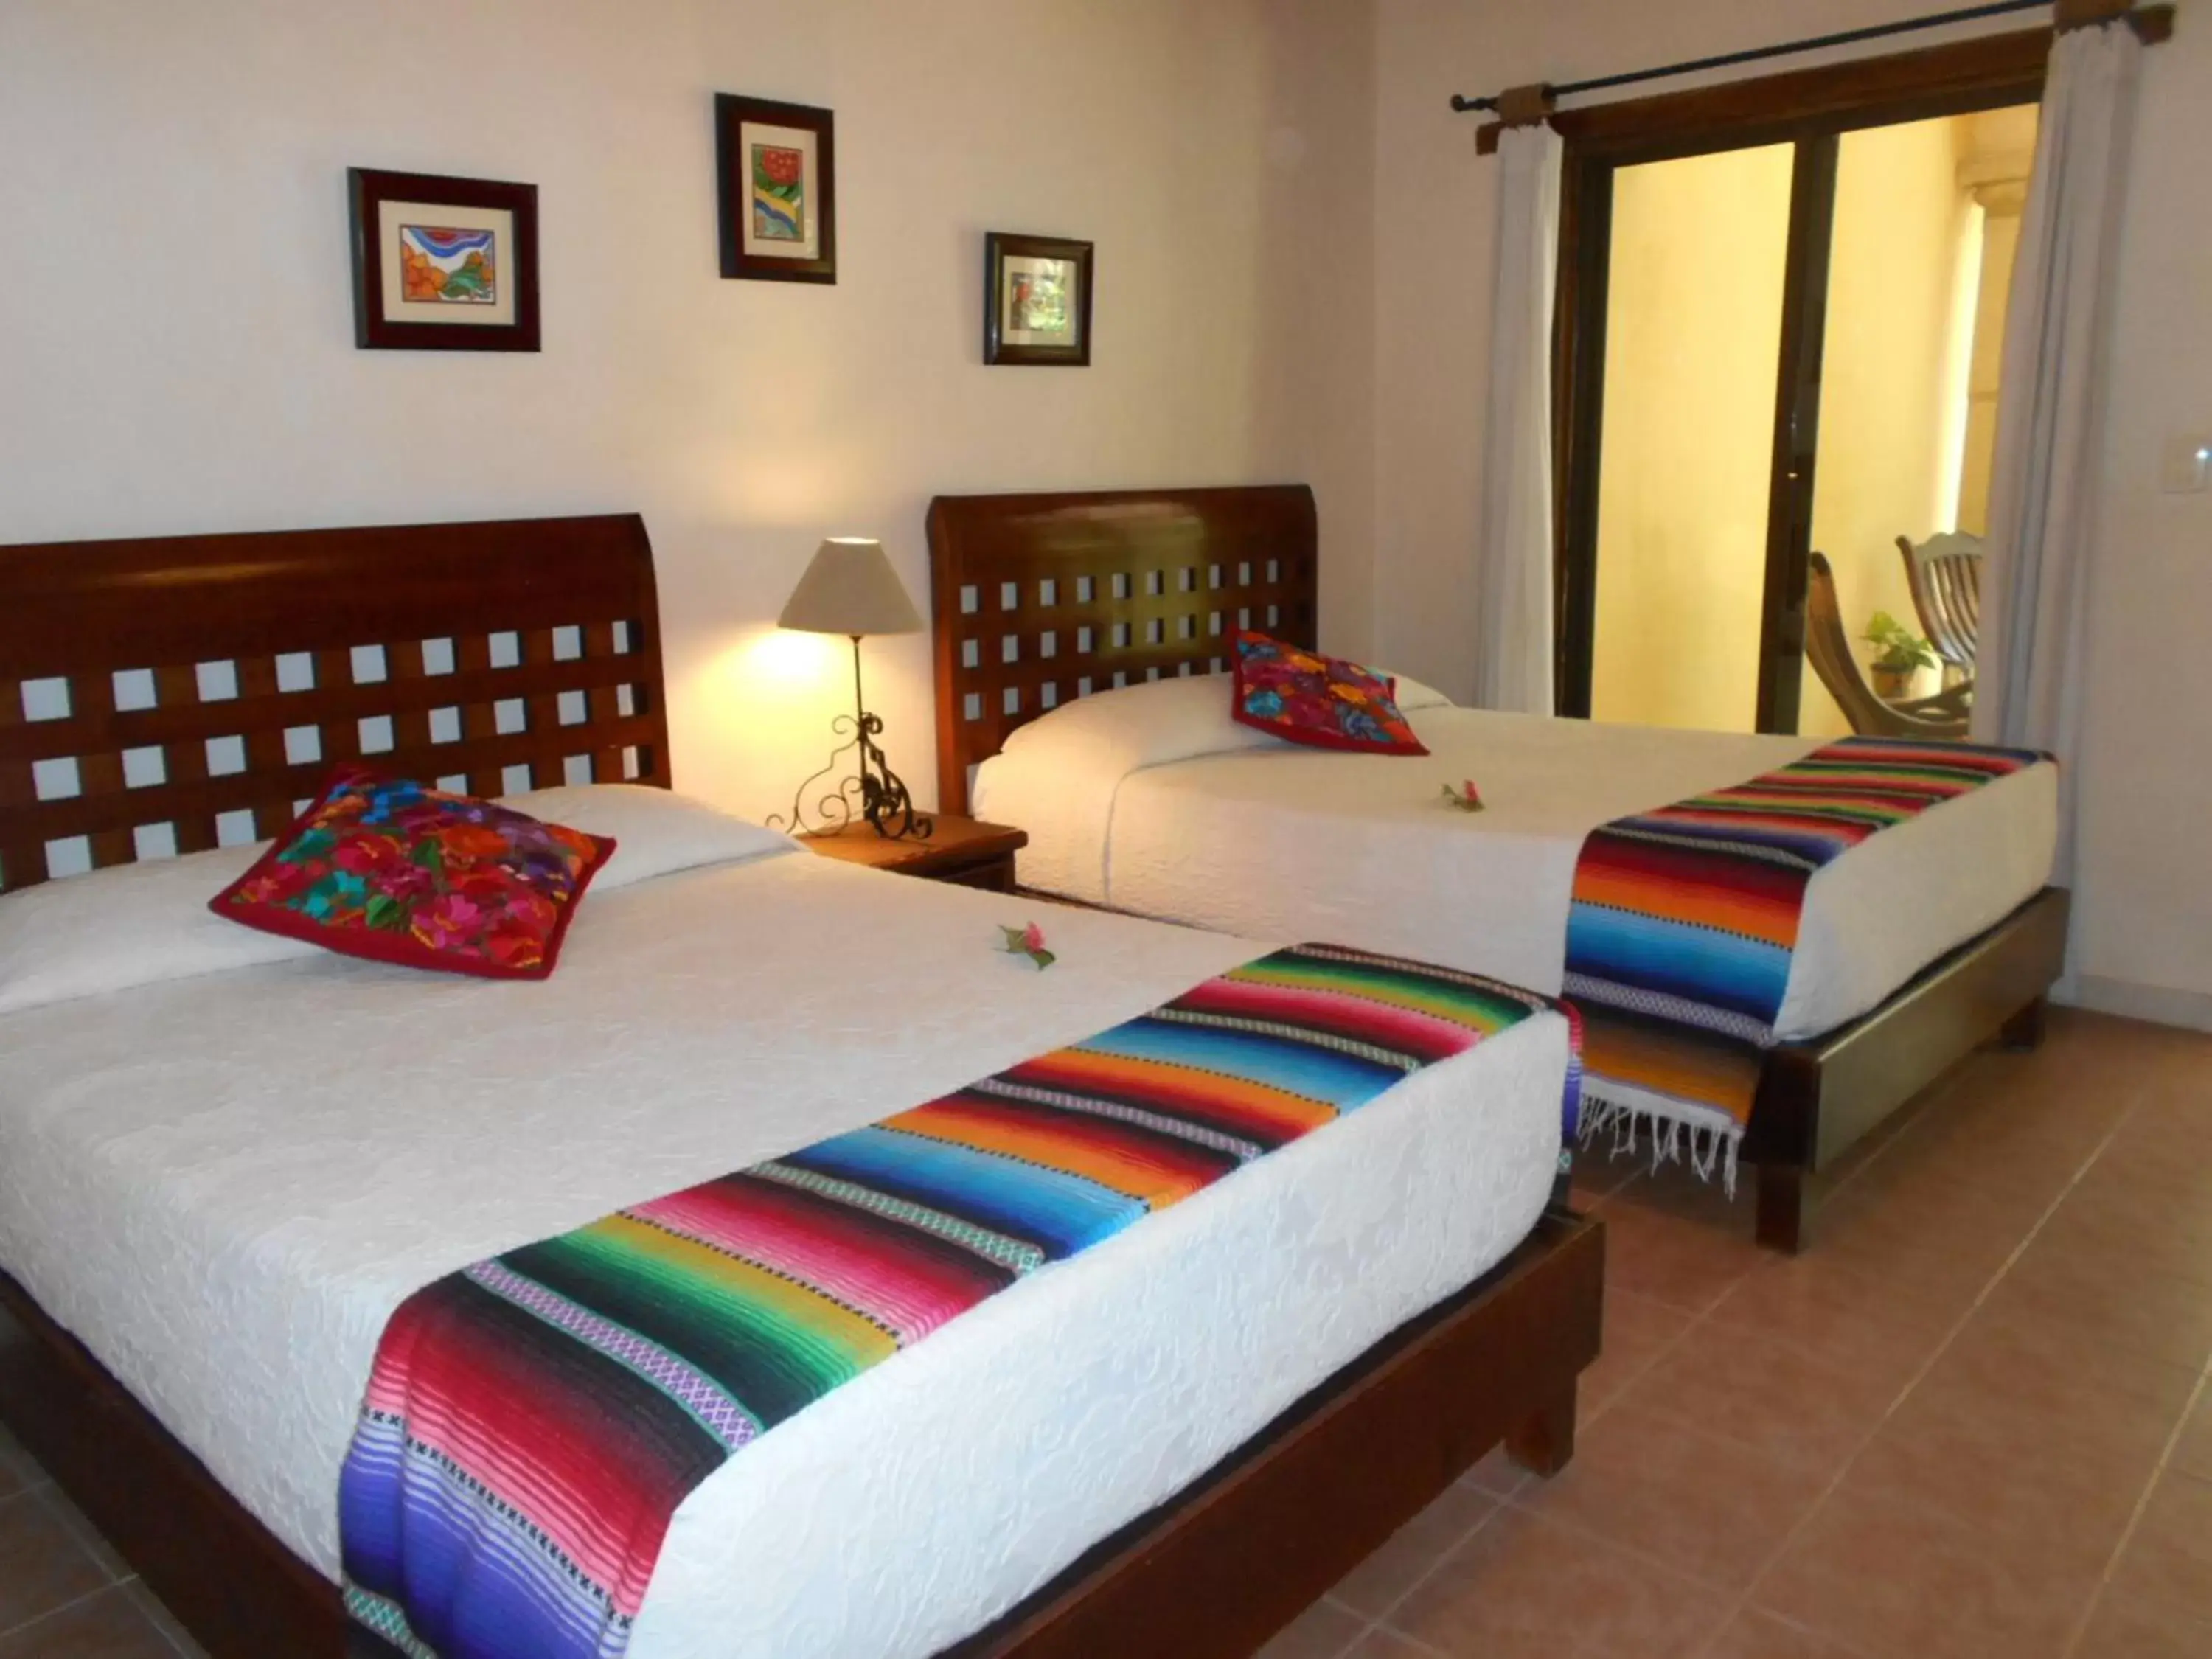 Decorative detail, Bed in Hacienda Chichen Resort and Yaxkin Spa